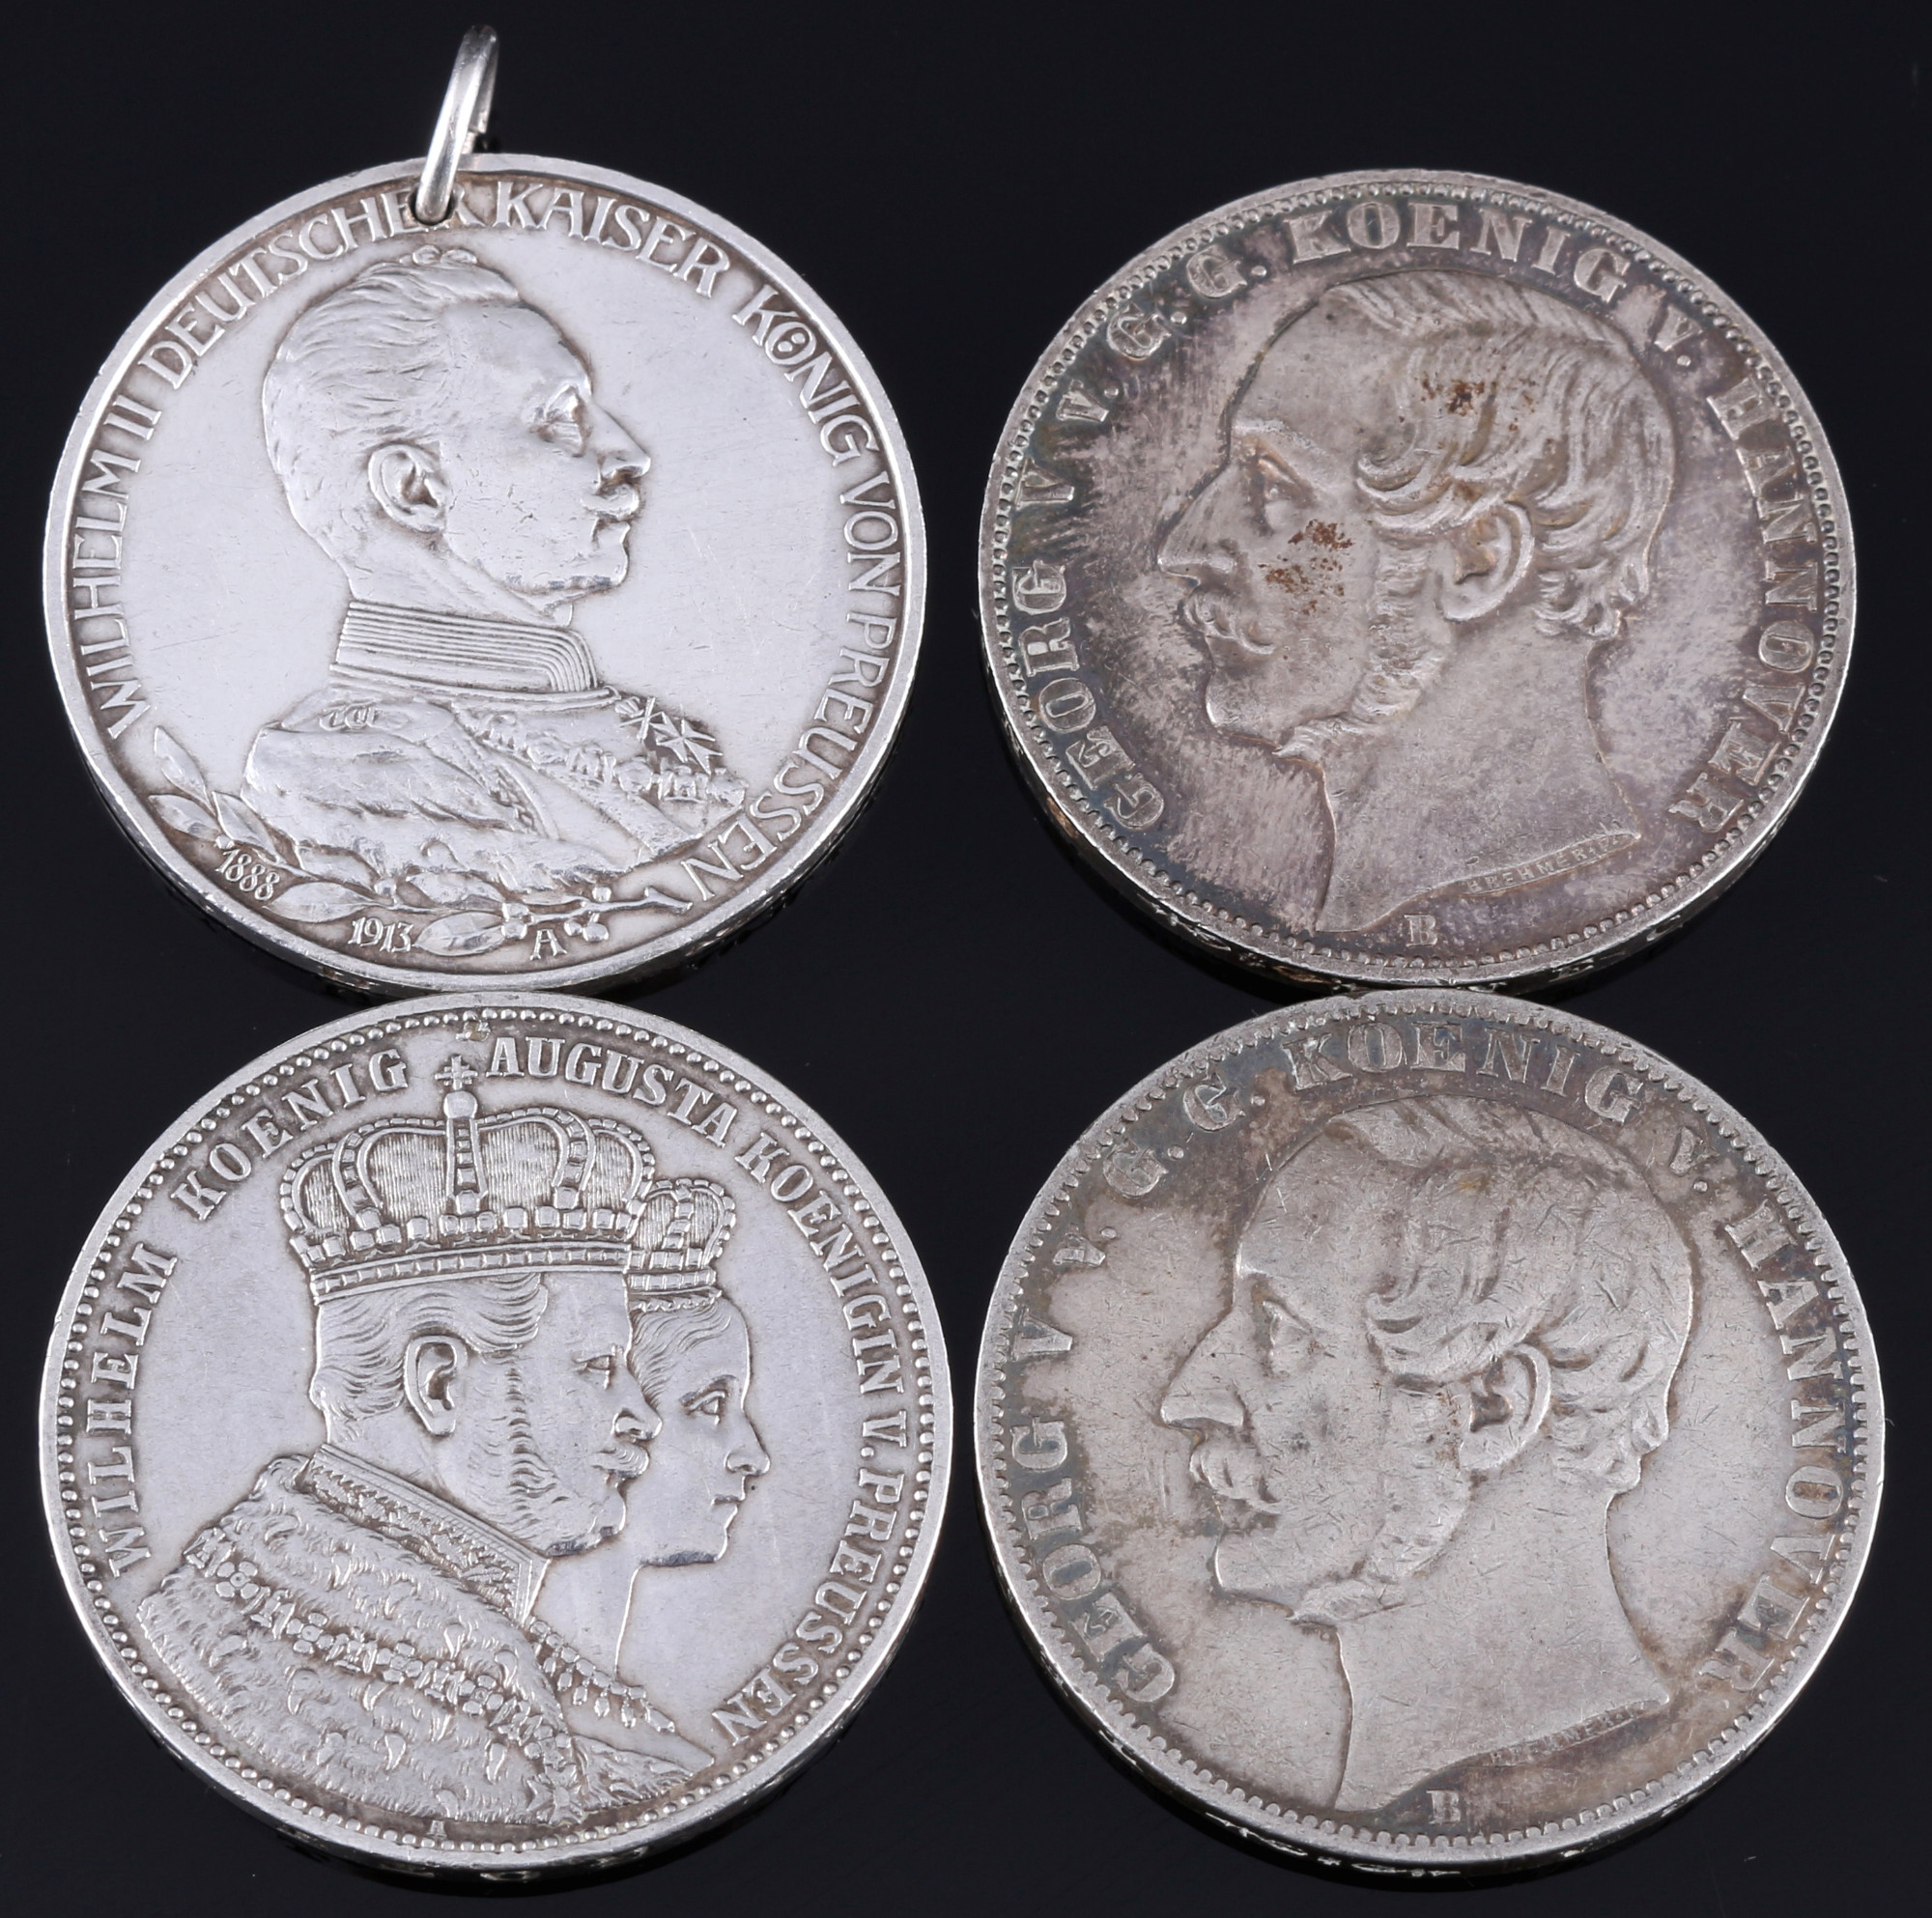 4 silver coins - german Mark and prussian Taler, Silbermünzen - Deutsche Mark und preussische Taler,